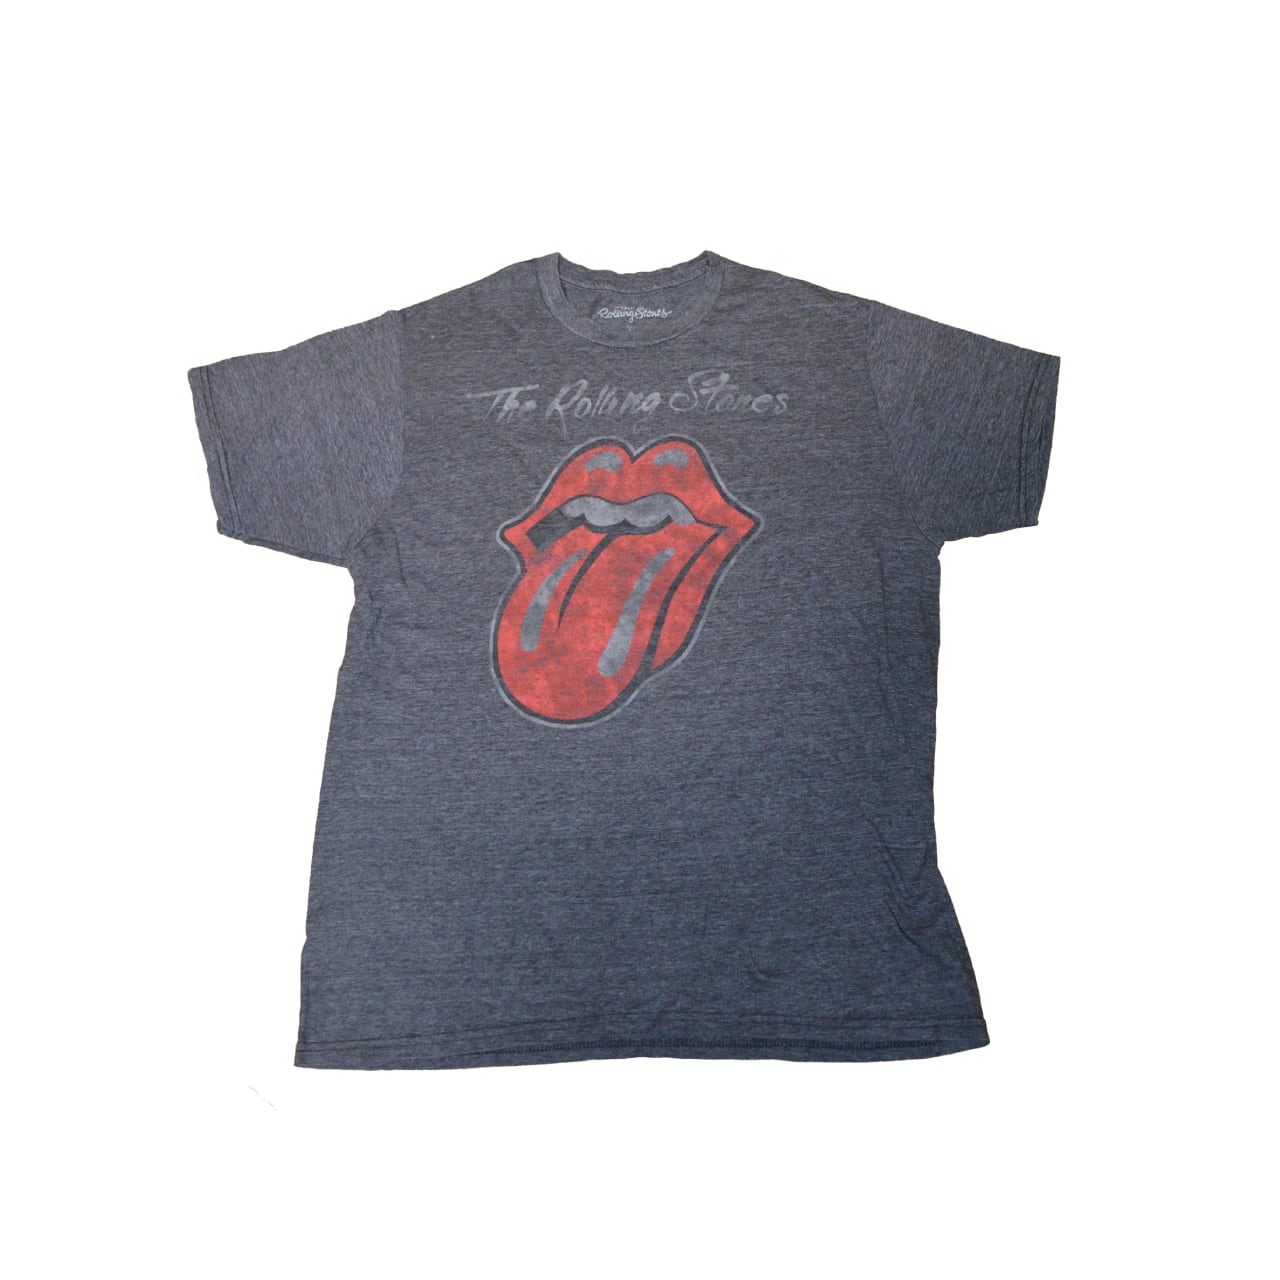 ローリングストーンズ ベースボールシャツ The Rolling Stones